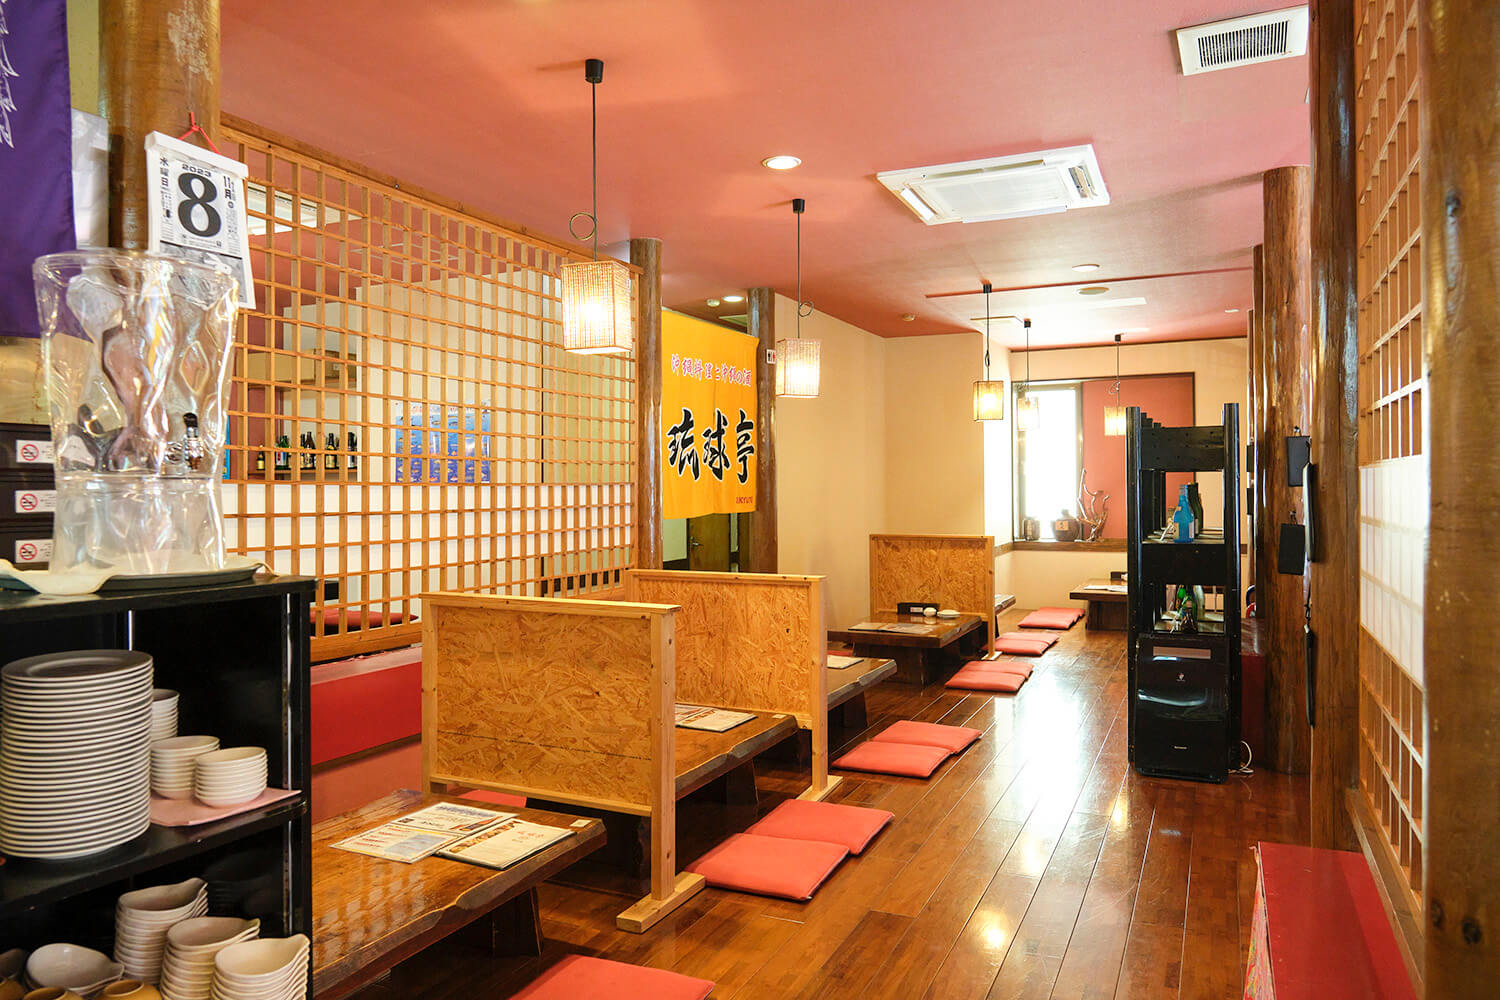 木を基調に内装のところどころに赤色があしらわれた店内は、琉球王朝をイメージして作られている